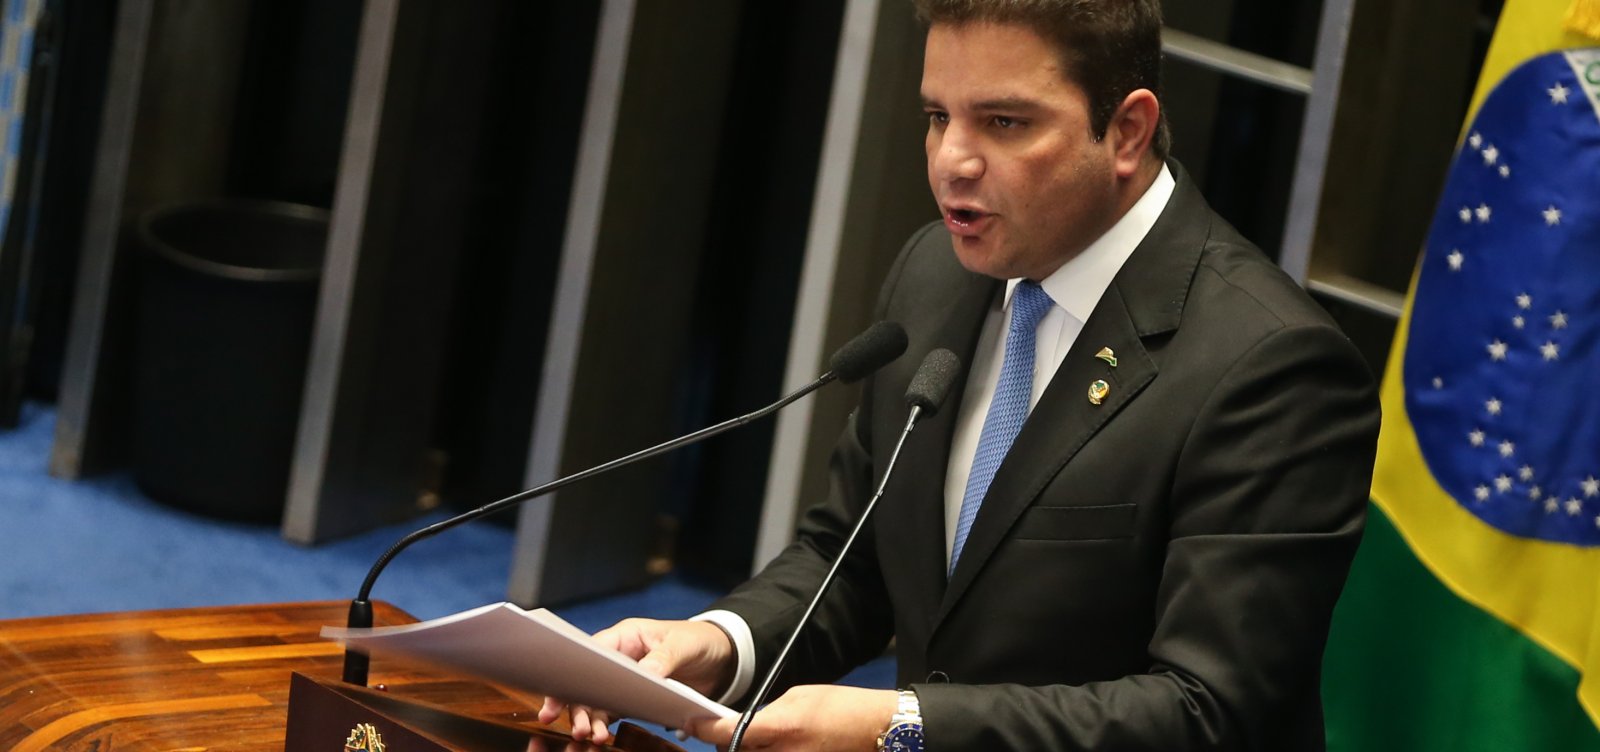 Governador do Acre se torna réu por corrupção após denúncia no STJ 